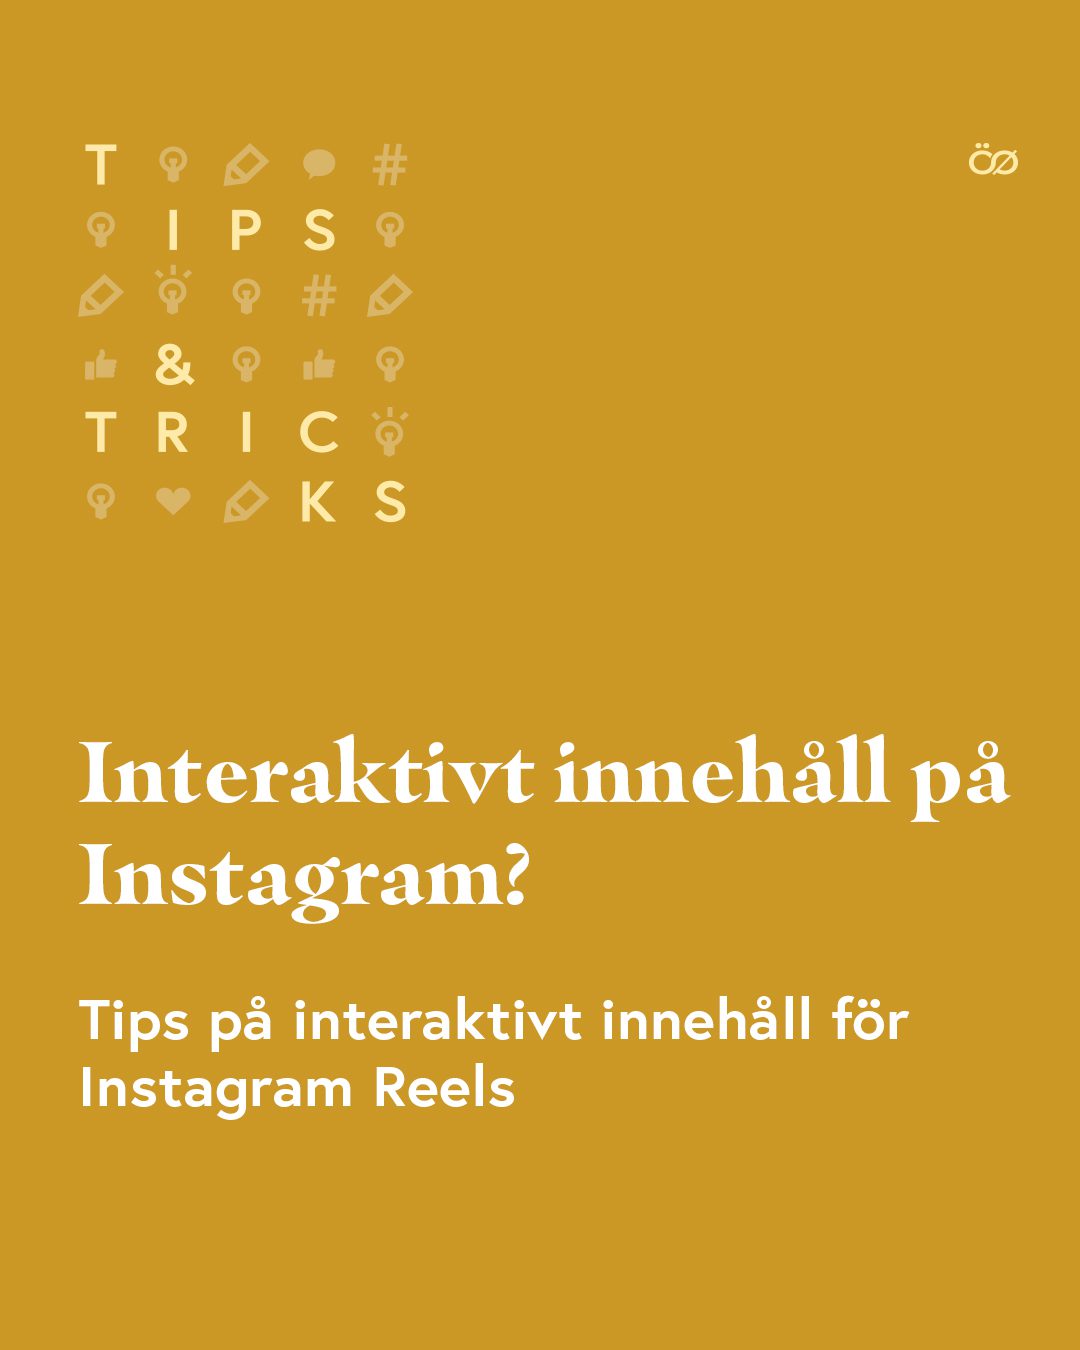 Skapa interaktivt innehåll på Instagram Reels